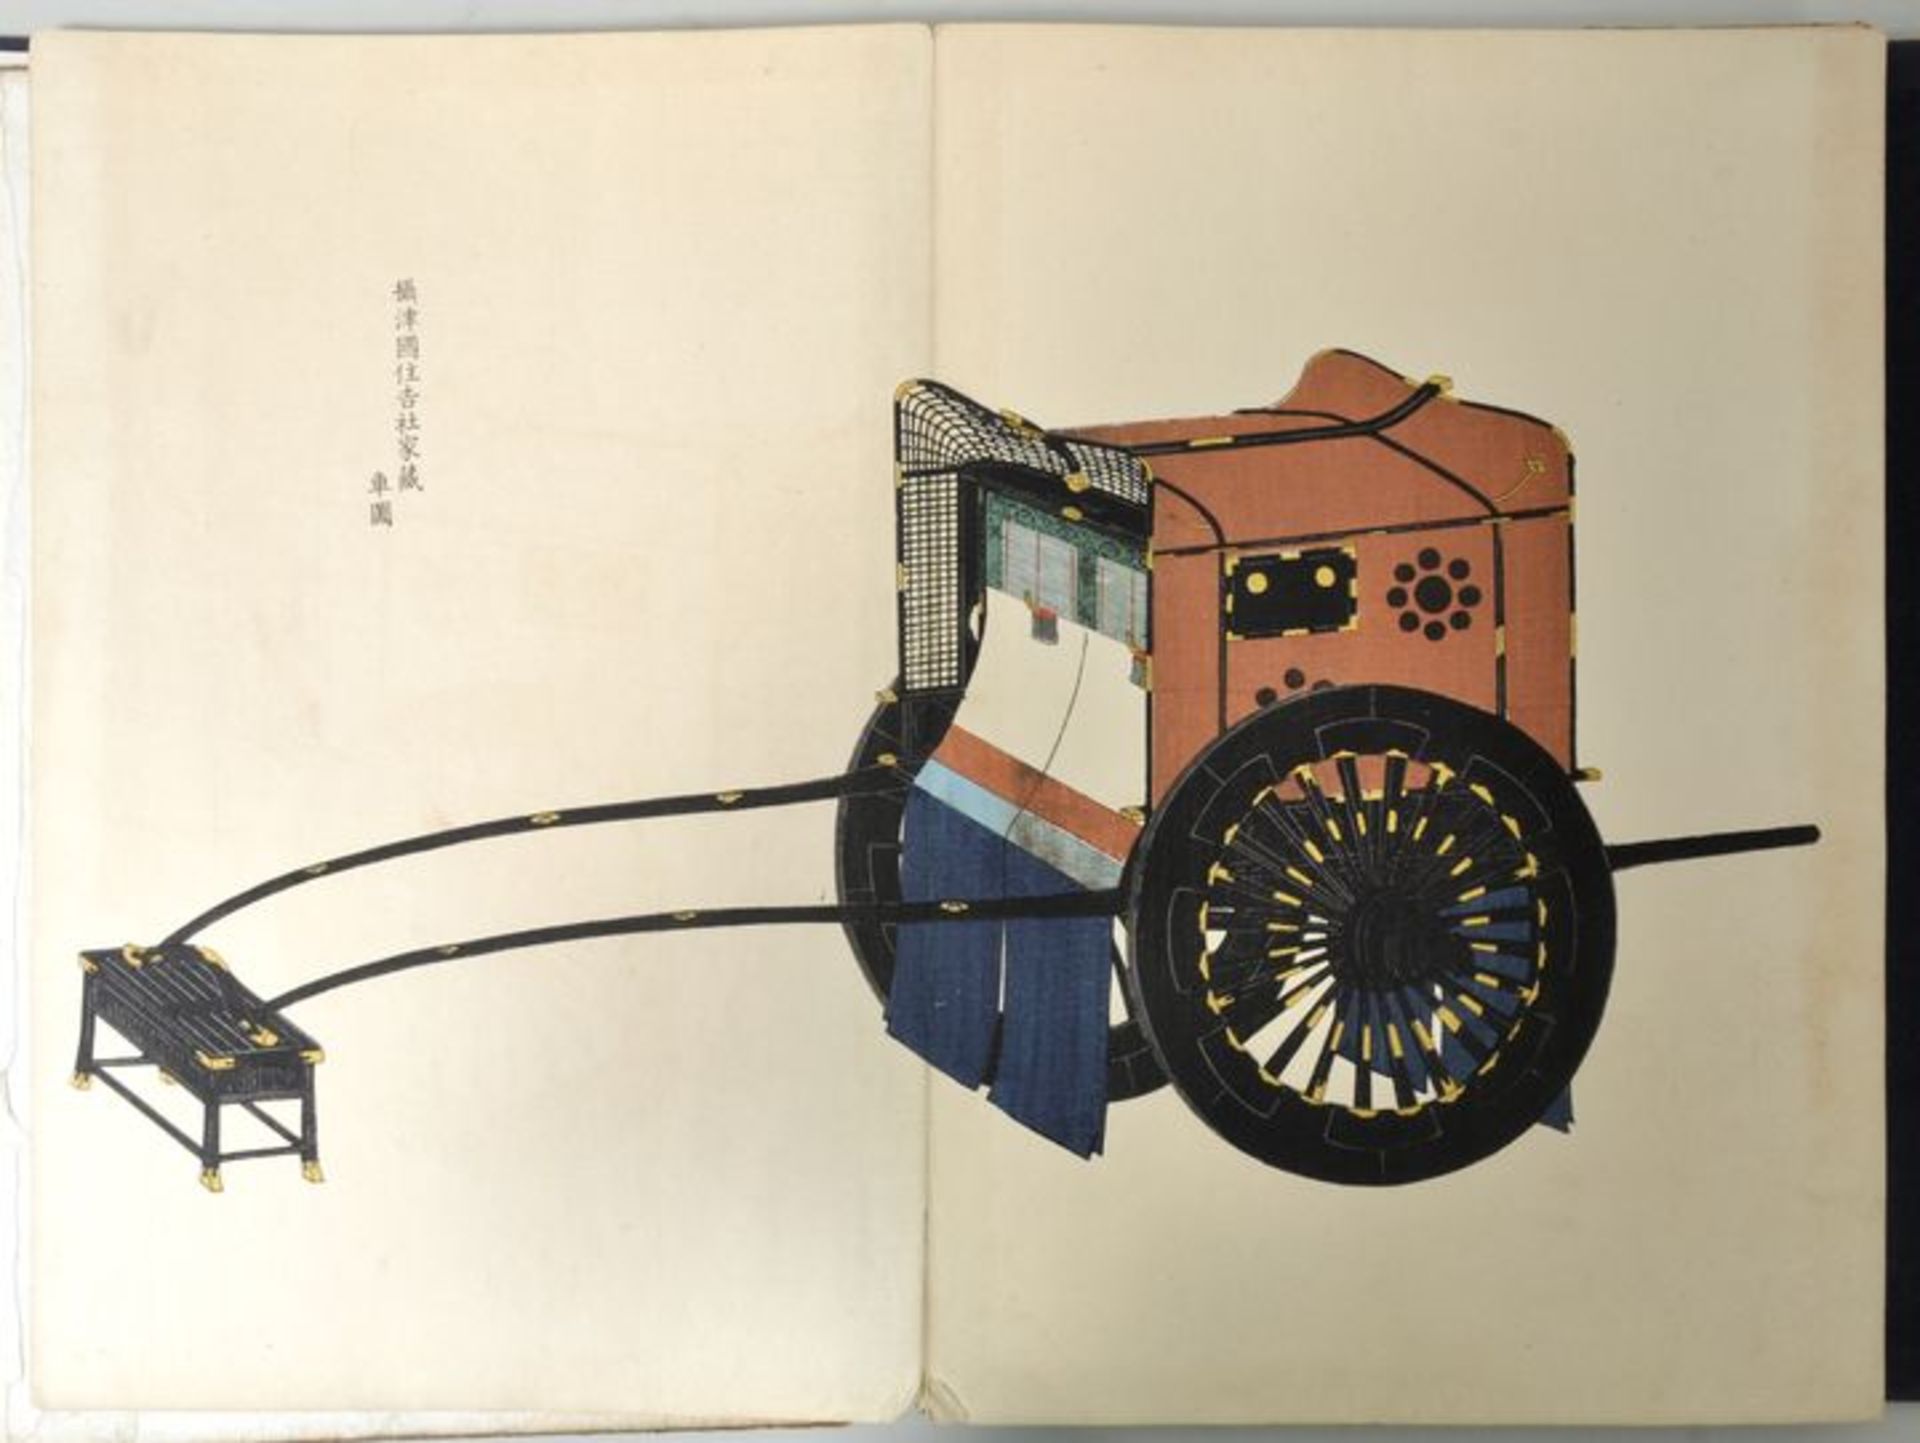 Yosha Zuko Fuzu, Japan, Periode Meiji (um 1900)Katalog mit Modellen luxuriöser Sänften und Kutschen. - Bild 3 aus 4